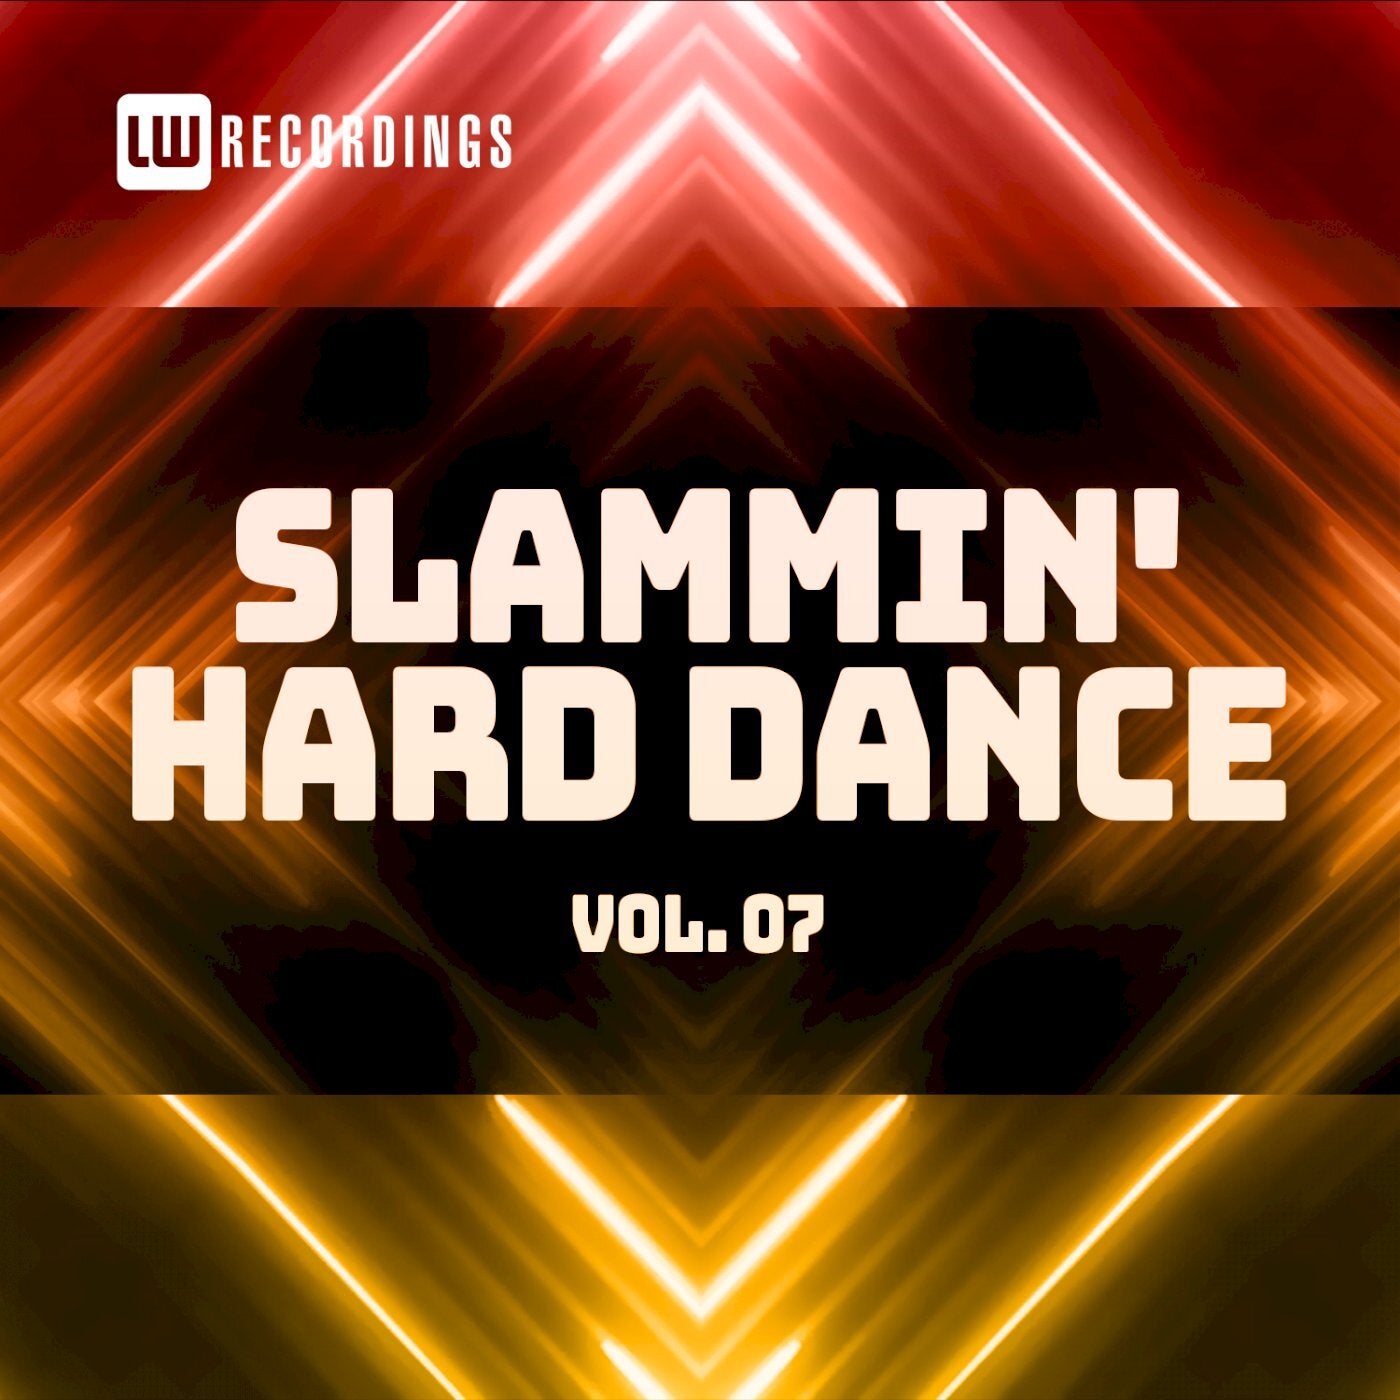 Slammin' Hard Dance, Vol. 07